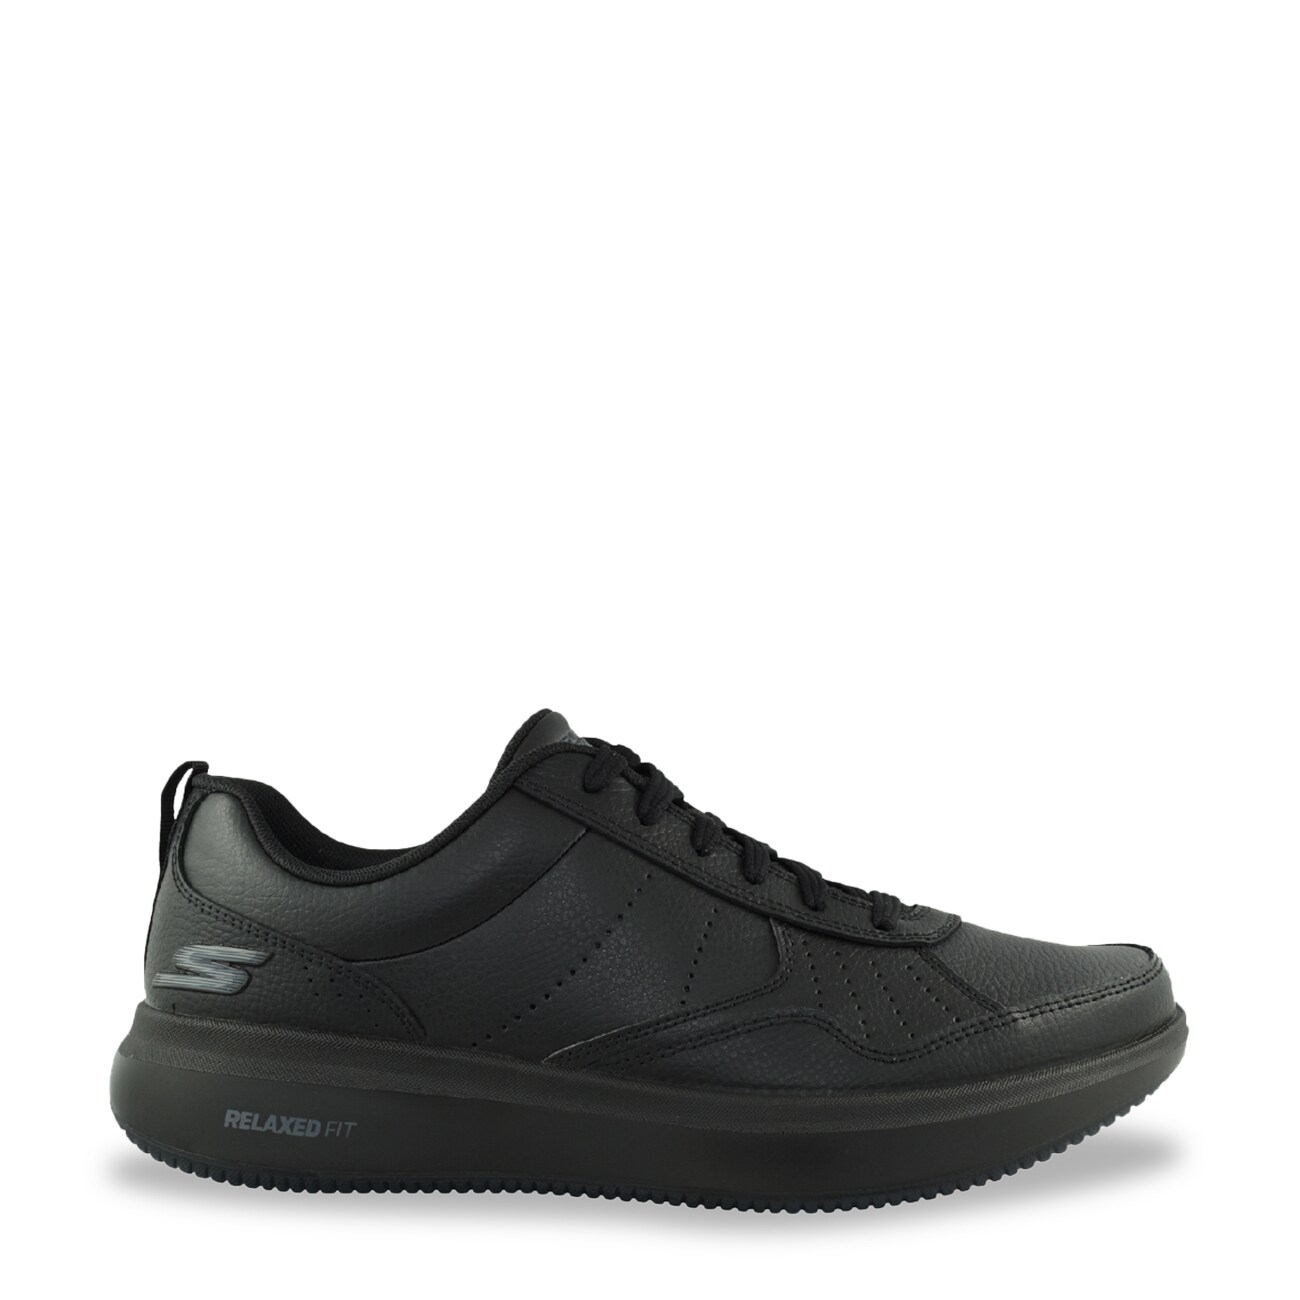 Skechers Men's Go Walk Steady Sneaker | The Shoe Company